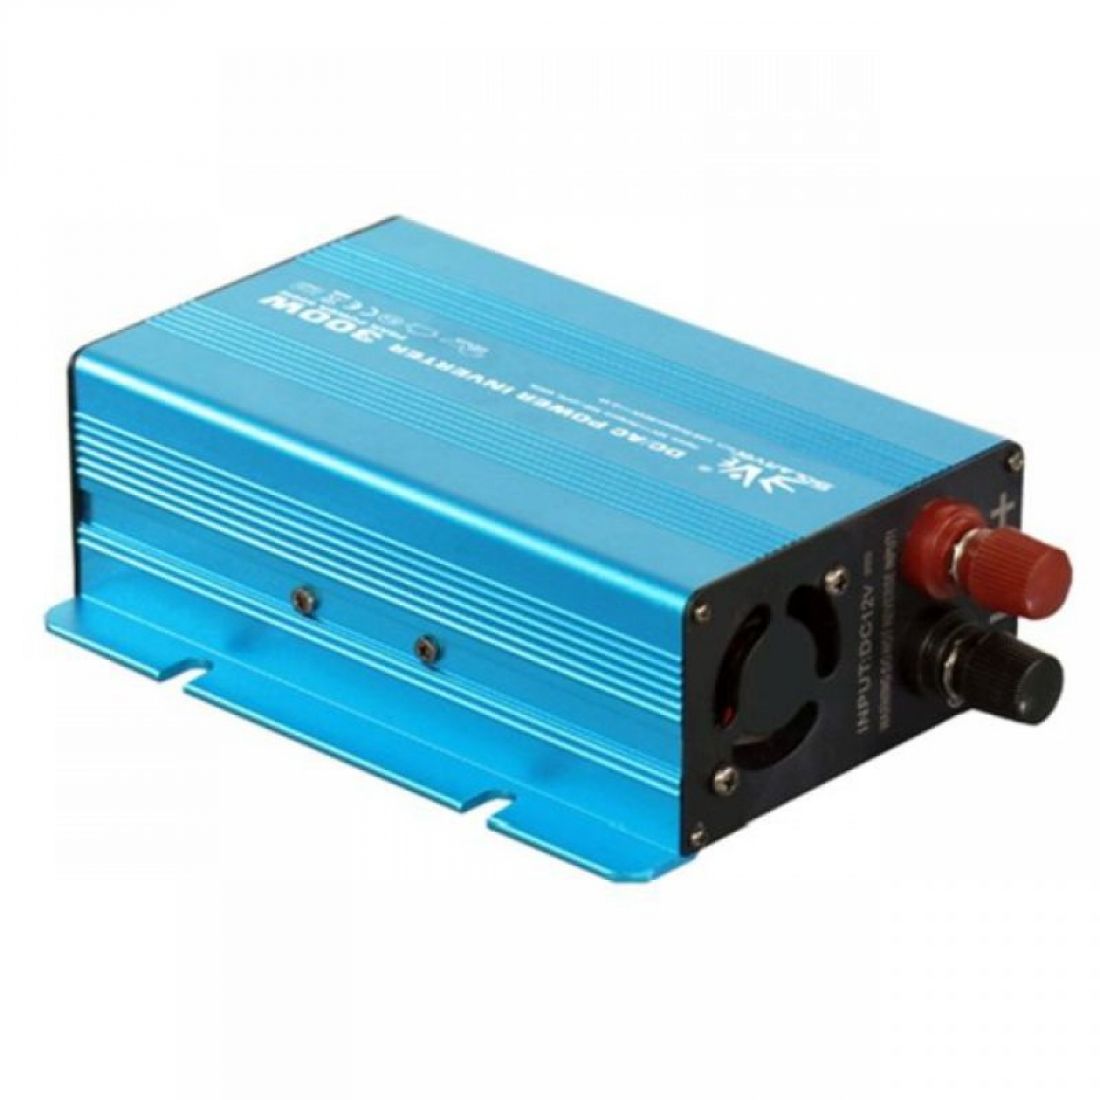 Wechselrichter reine Sinuswelle, 12 V DC – 230 V AC, 300 W